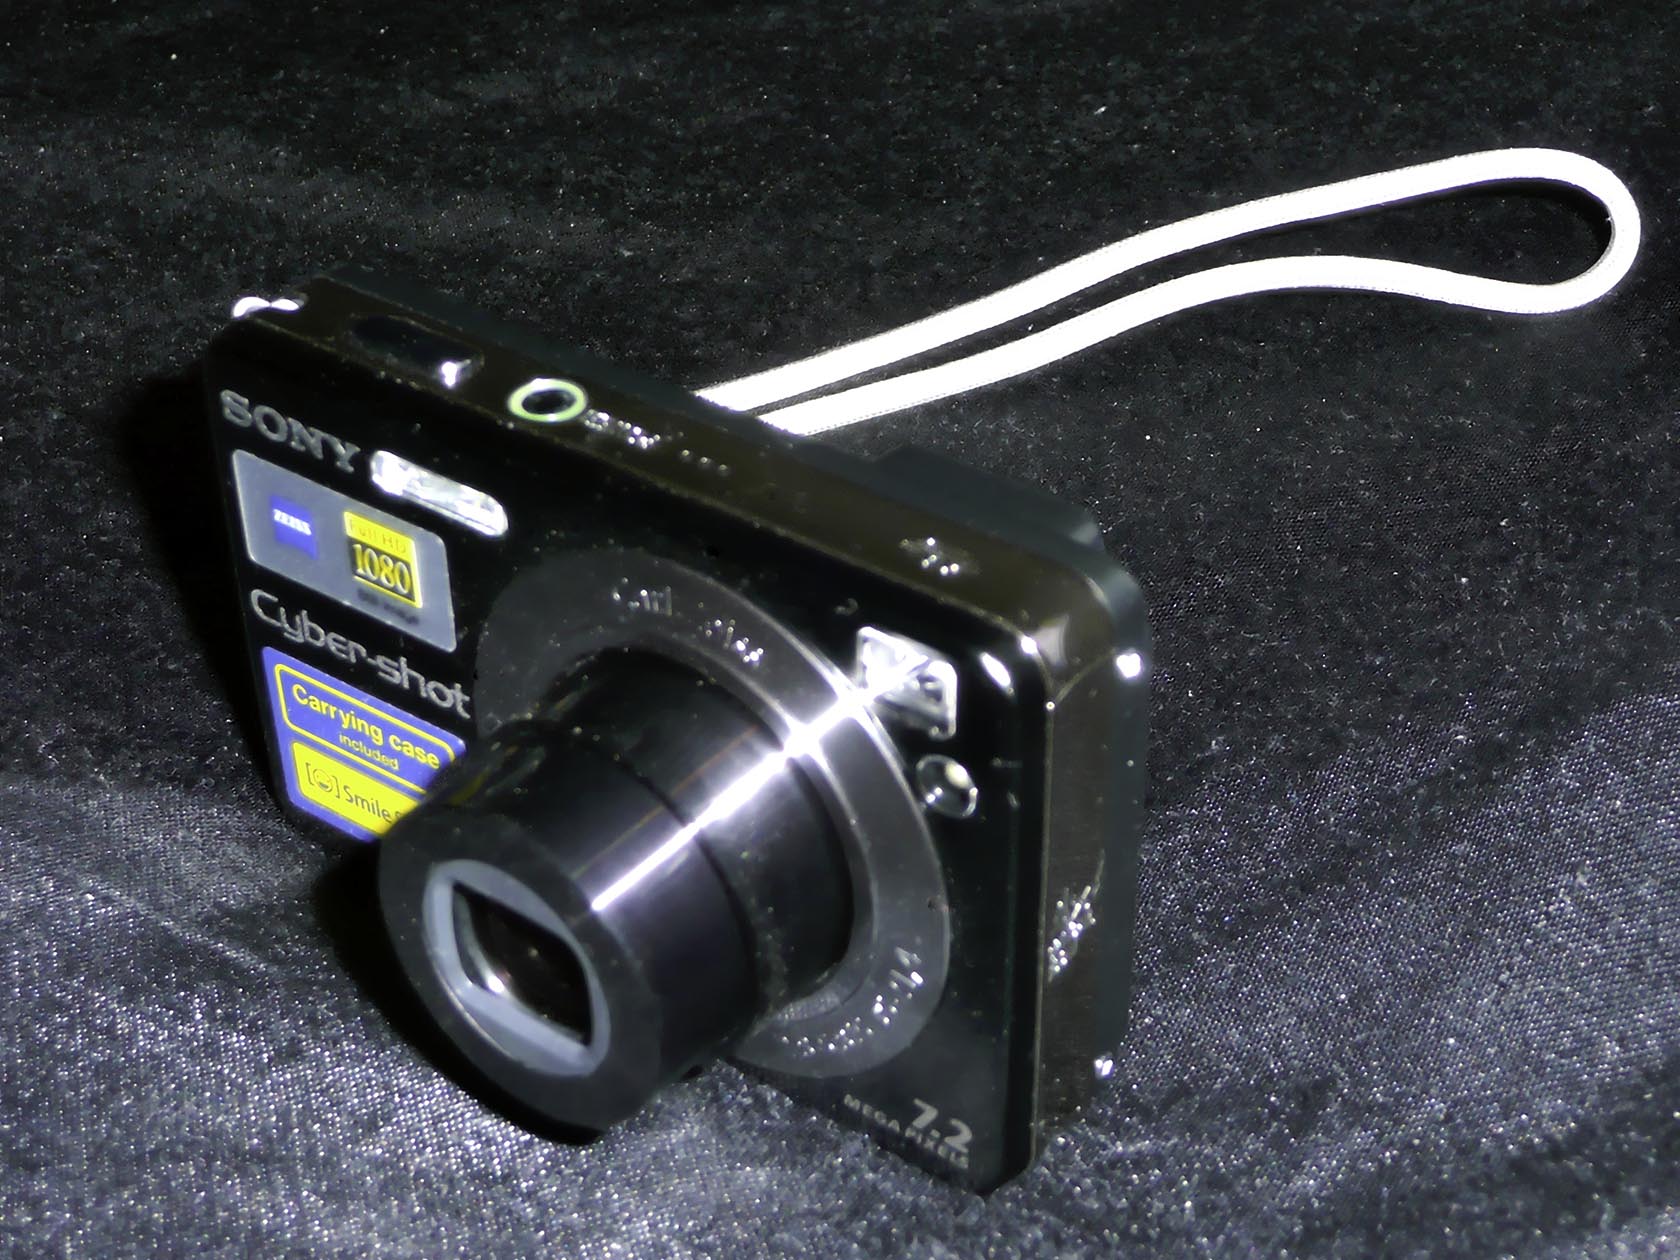 Kompaktkamera Sony Cybershot-DSC-W115 B